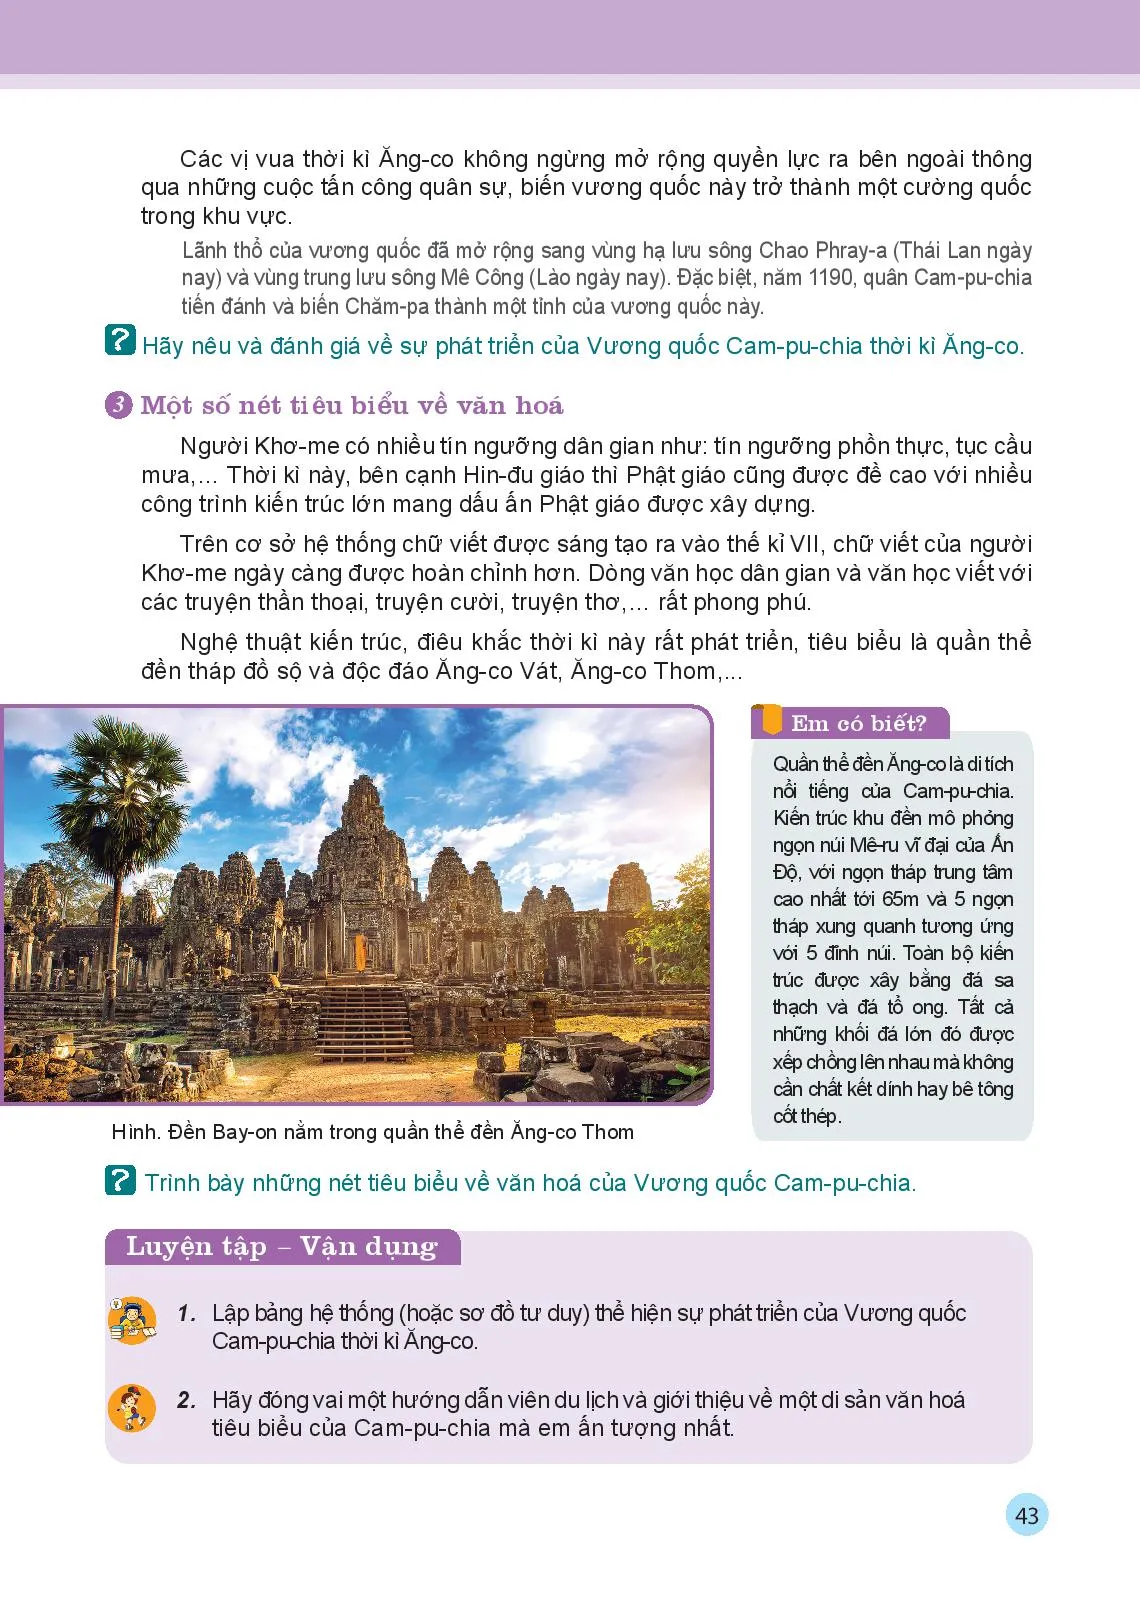 Bài 8 Vương quốc Cam-pu-chia